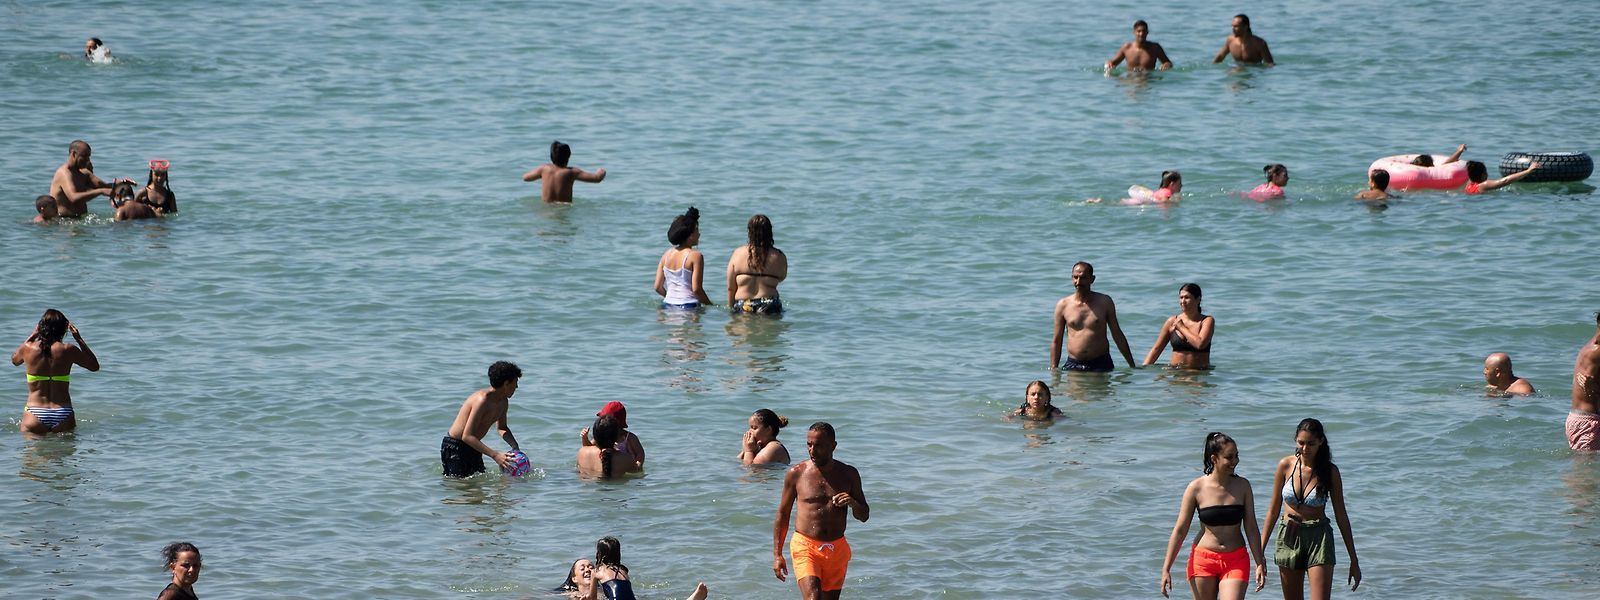 Sommer, Sonne, Meer: 2020 wird der Urlaubsalltag für viele Bürger anders aussehen.